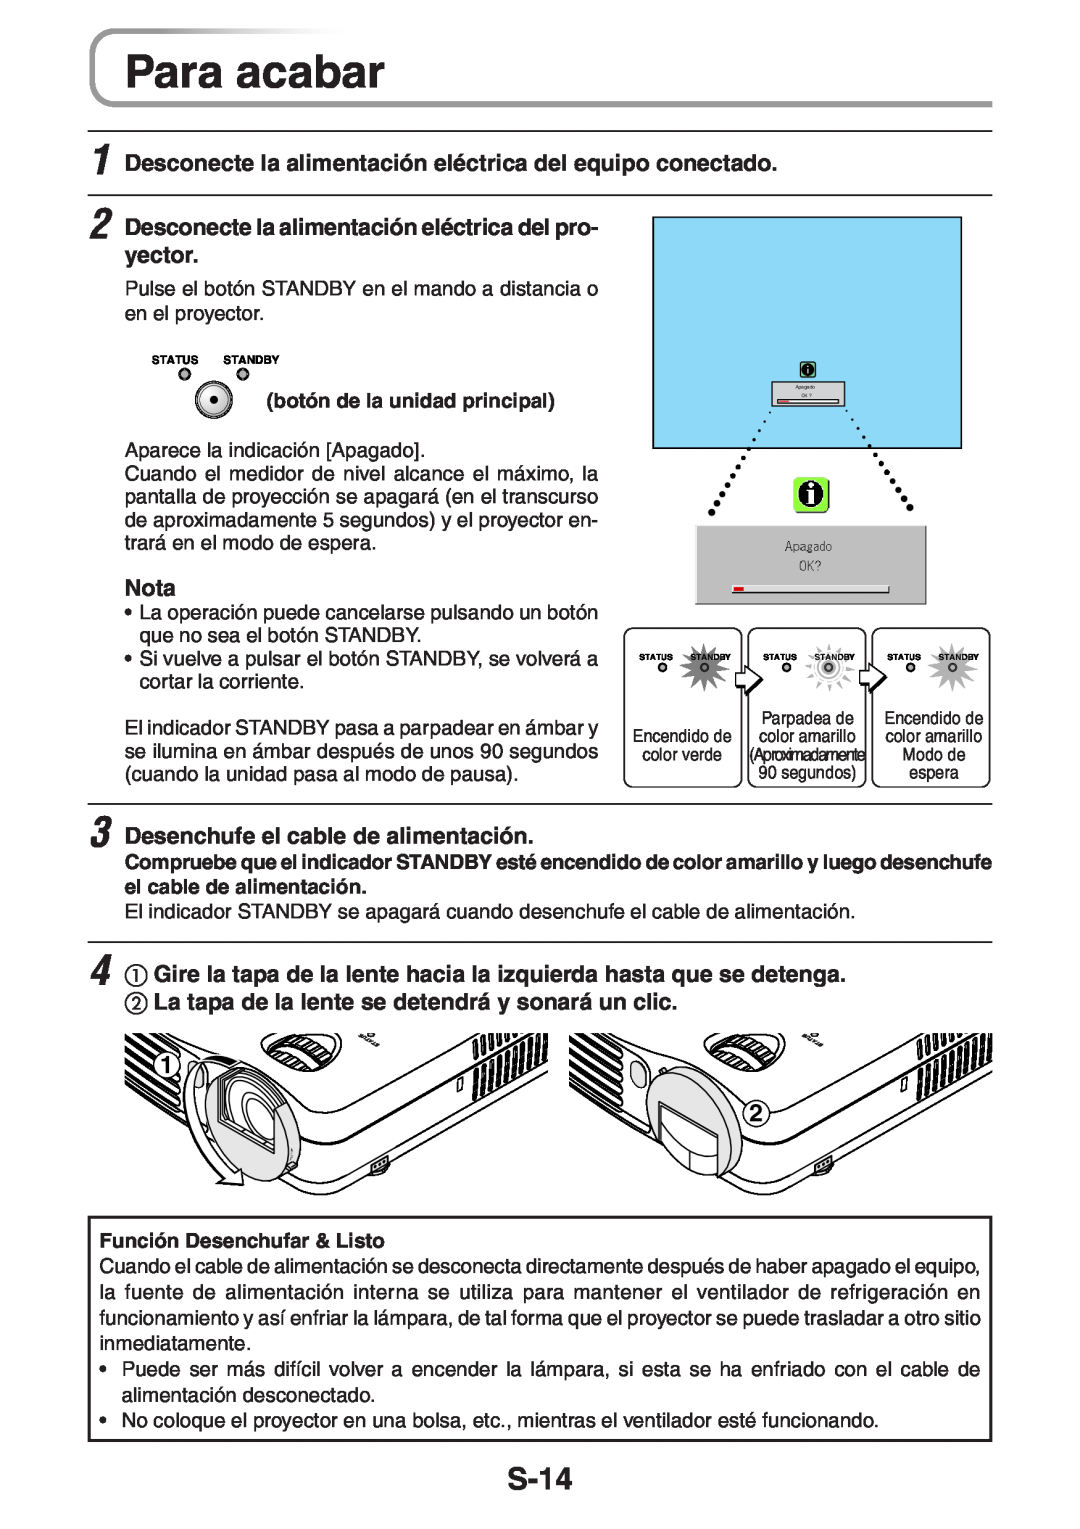 3M PX5 user manual Para acabar, S-14, Desconecte la alimentación eléctrica del equipo conectado, yector, Nota 